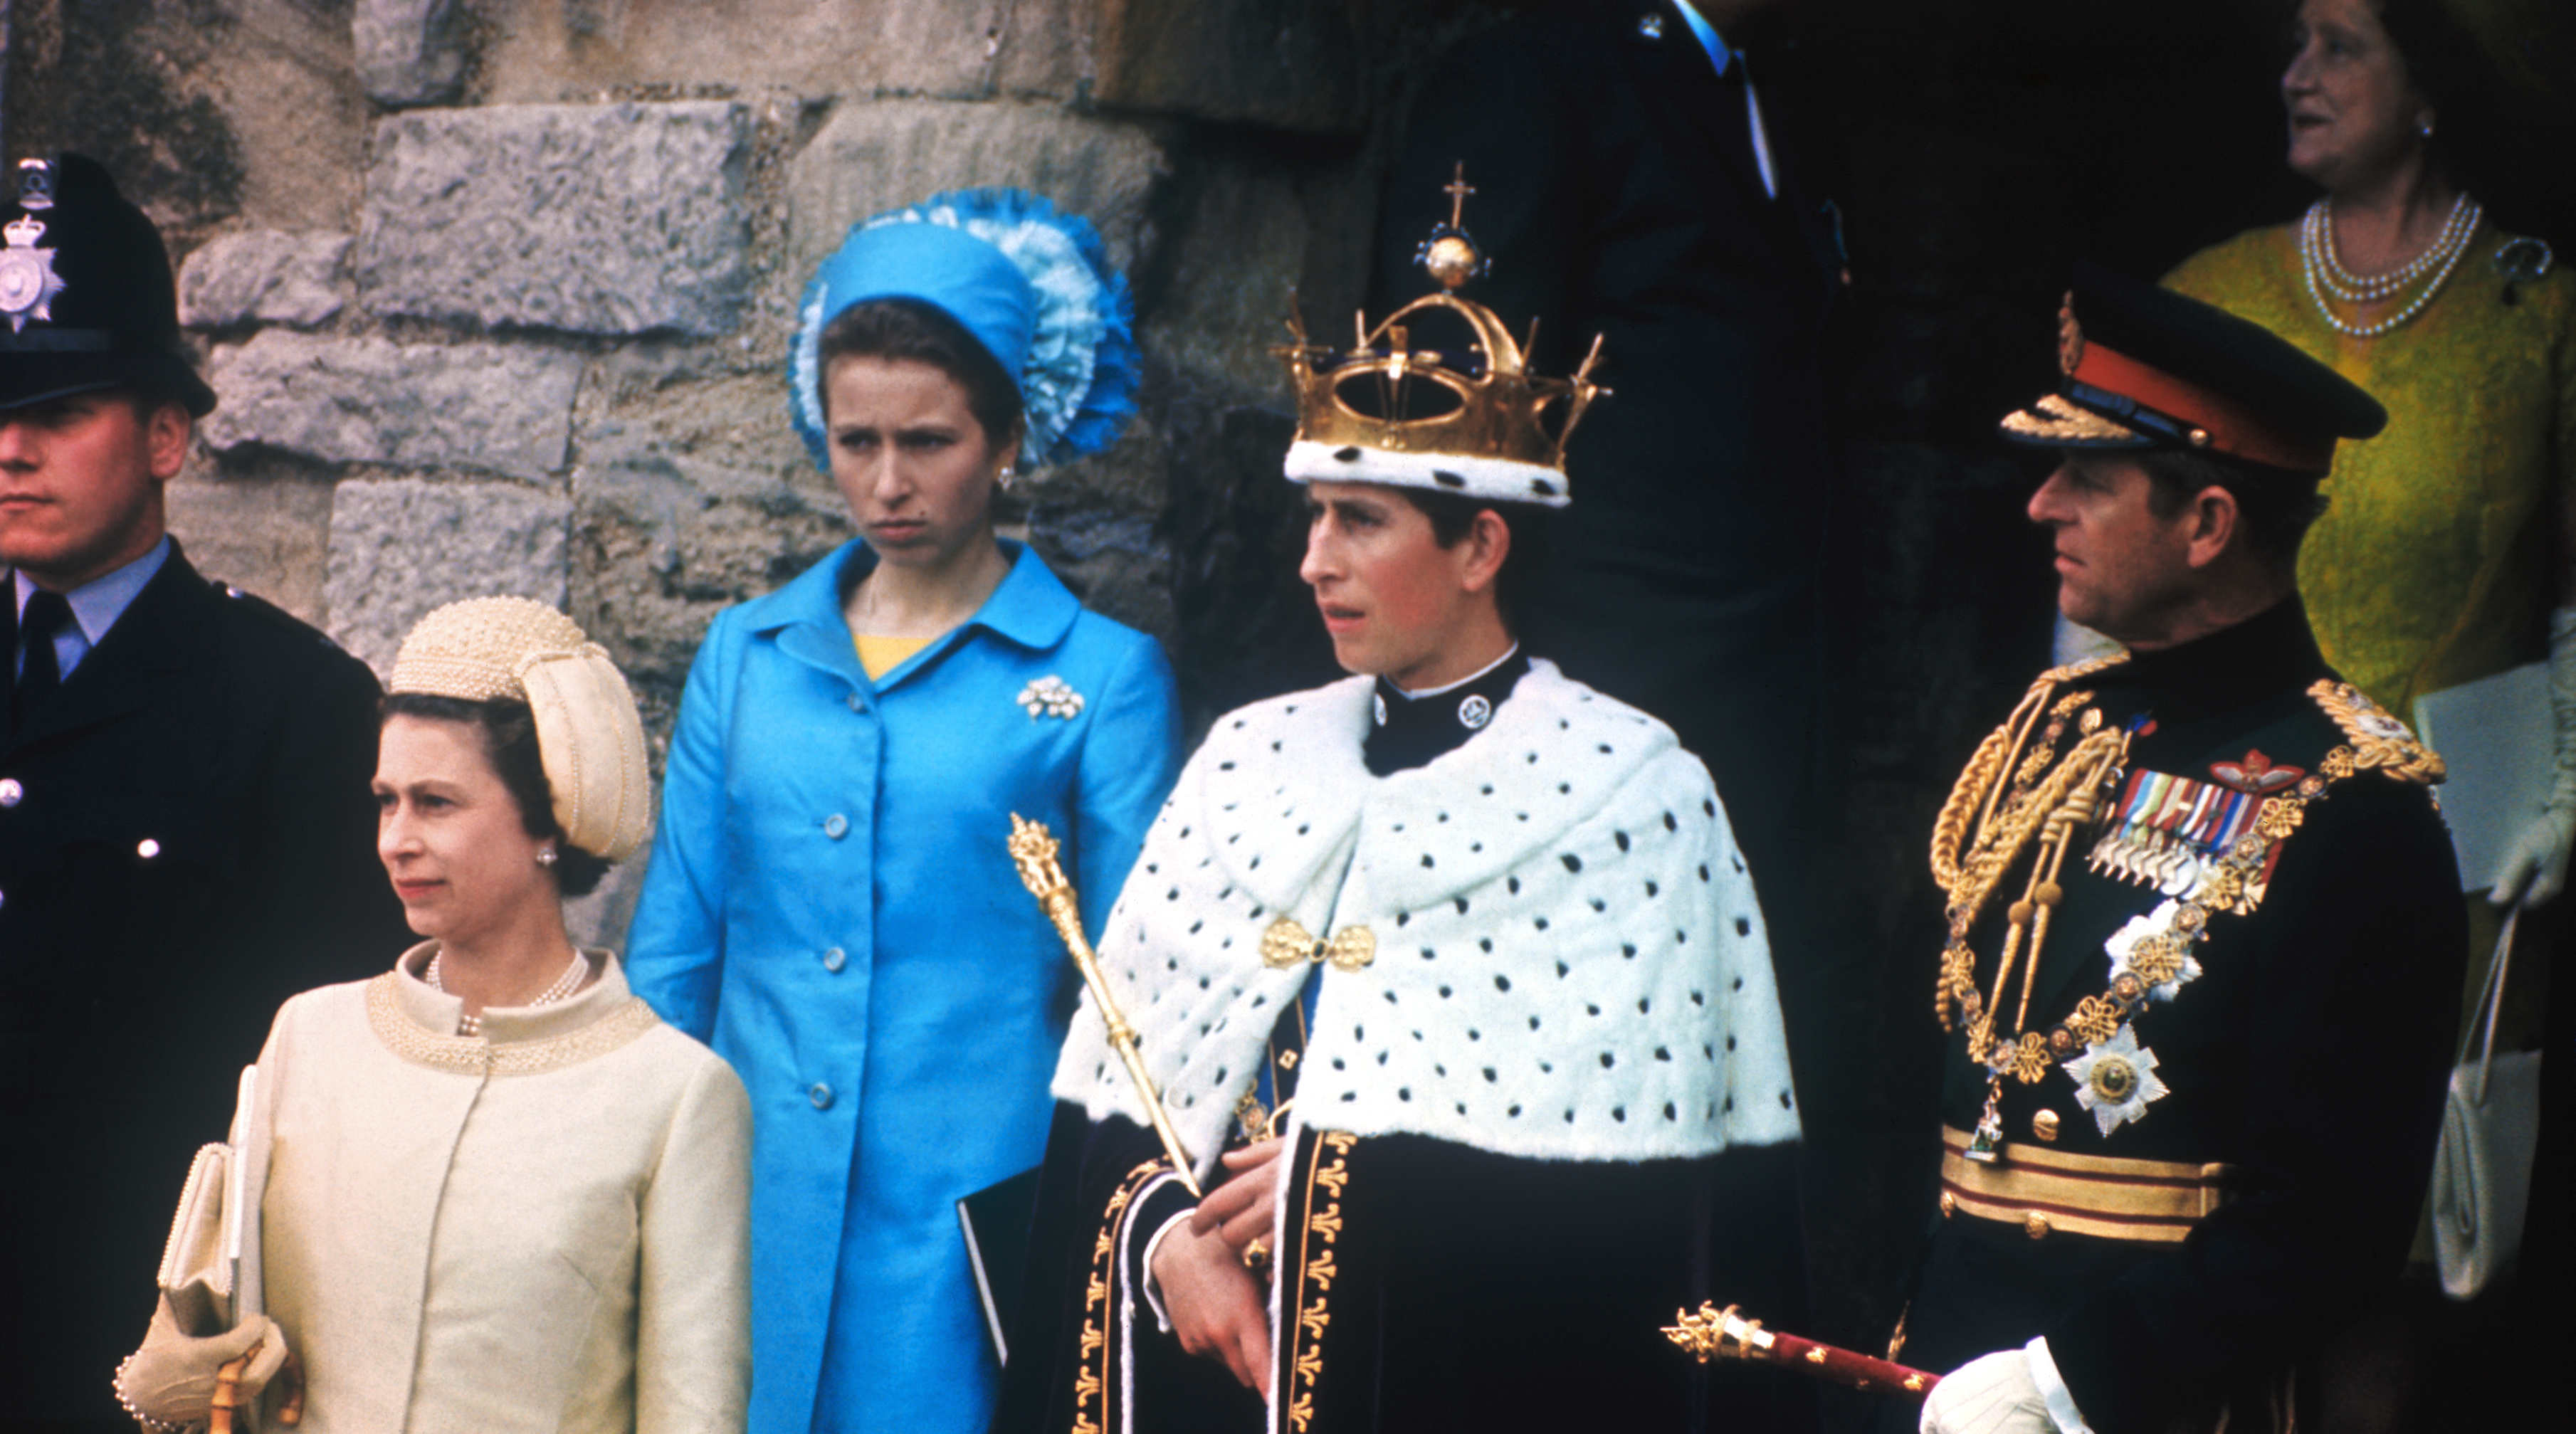 El entonces príncipe Carlos en los escalones del castillo después de ser investido como Príncipe de Gales. "Un personaje tan expuesto debe recordar la asimetría entre lo positivo y lo negativo Las personas van a recordar más lo negativo que lo positivo", dicen los especialistas